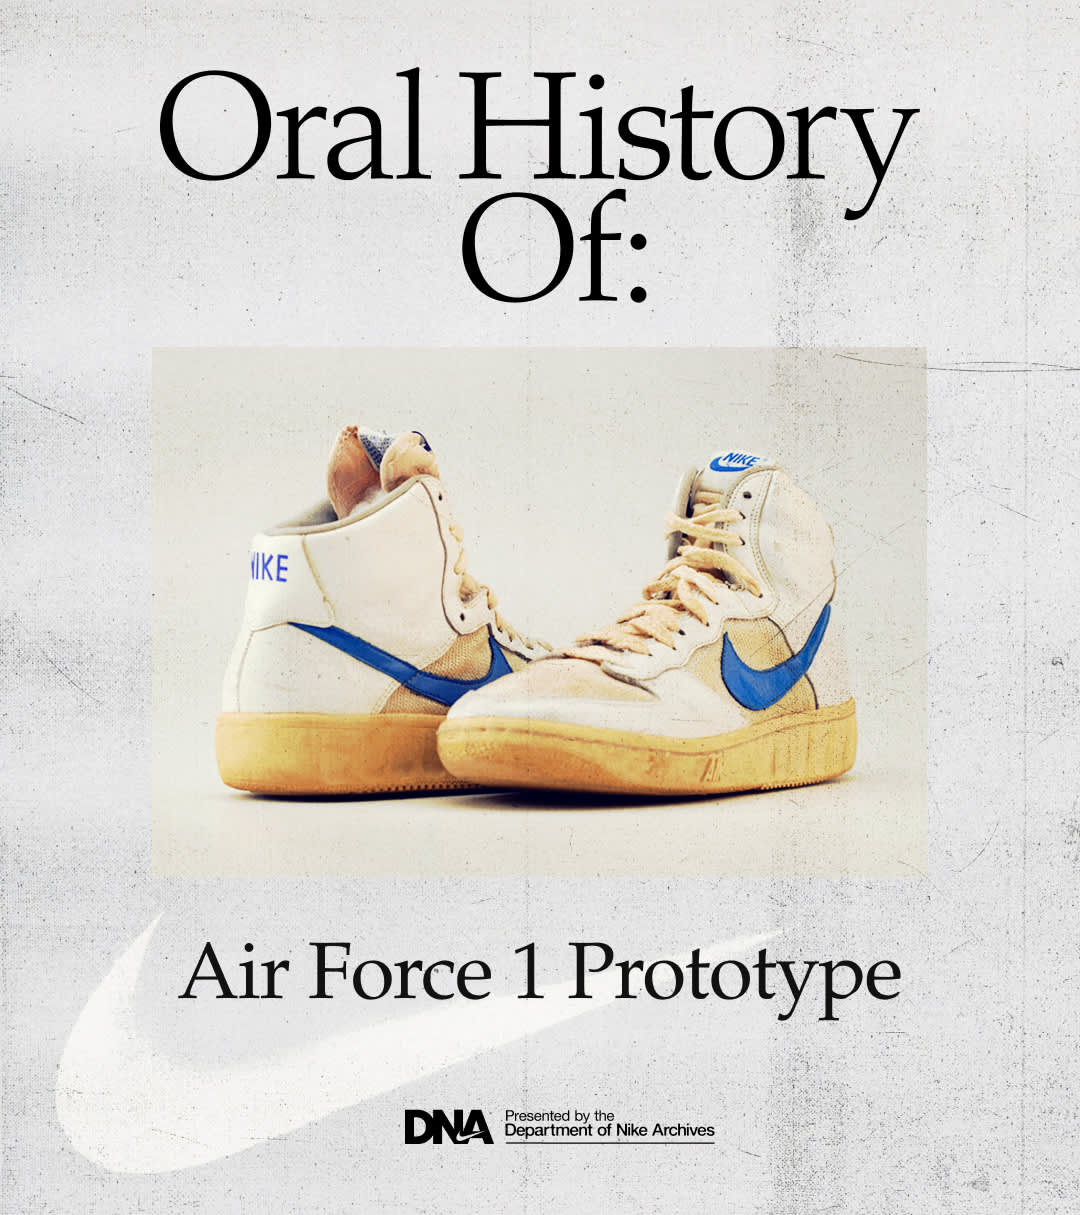 La historia de las Nike Air Force 1 - JD Blog